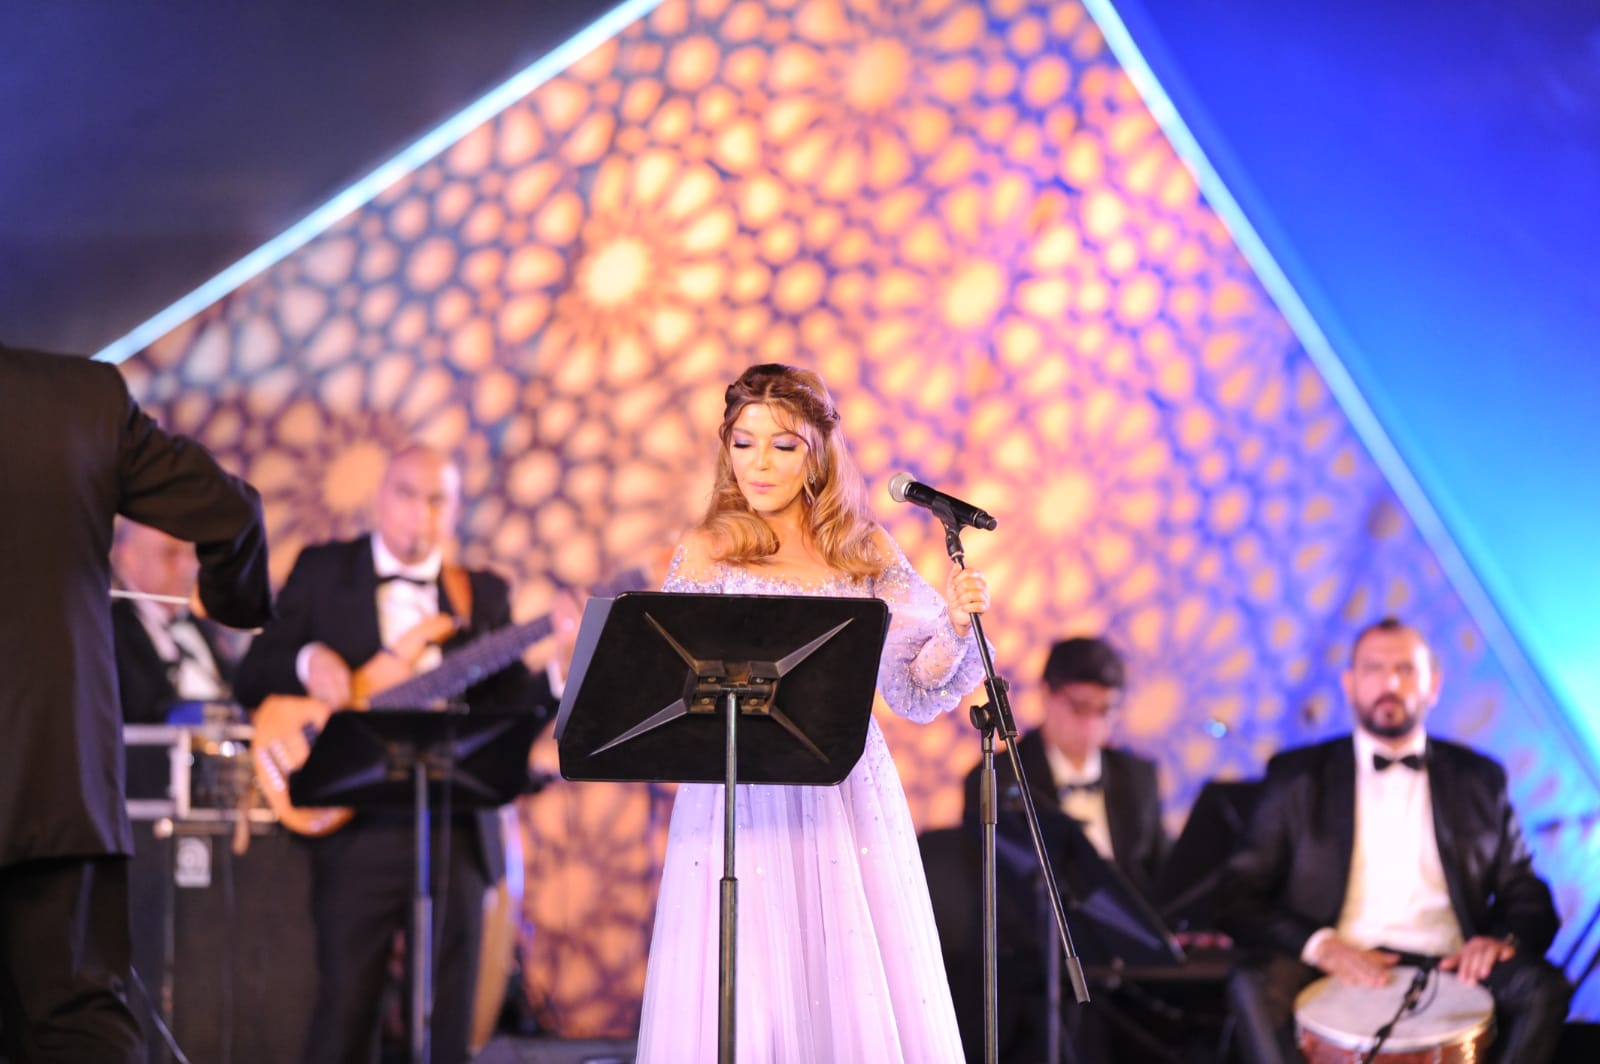 سميرة سعيد تنفعل على مايسترو حفلها بمصر وتتوقف عن الغناء (فيديو)